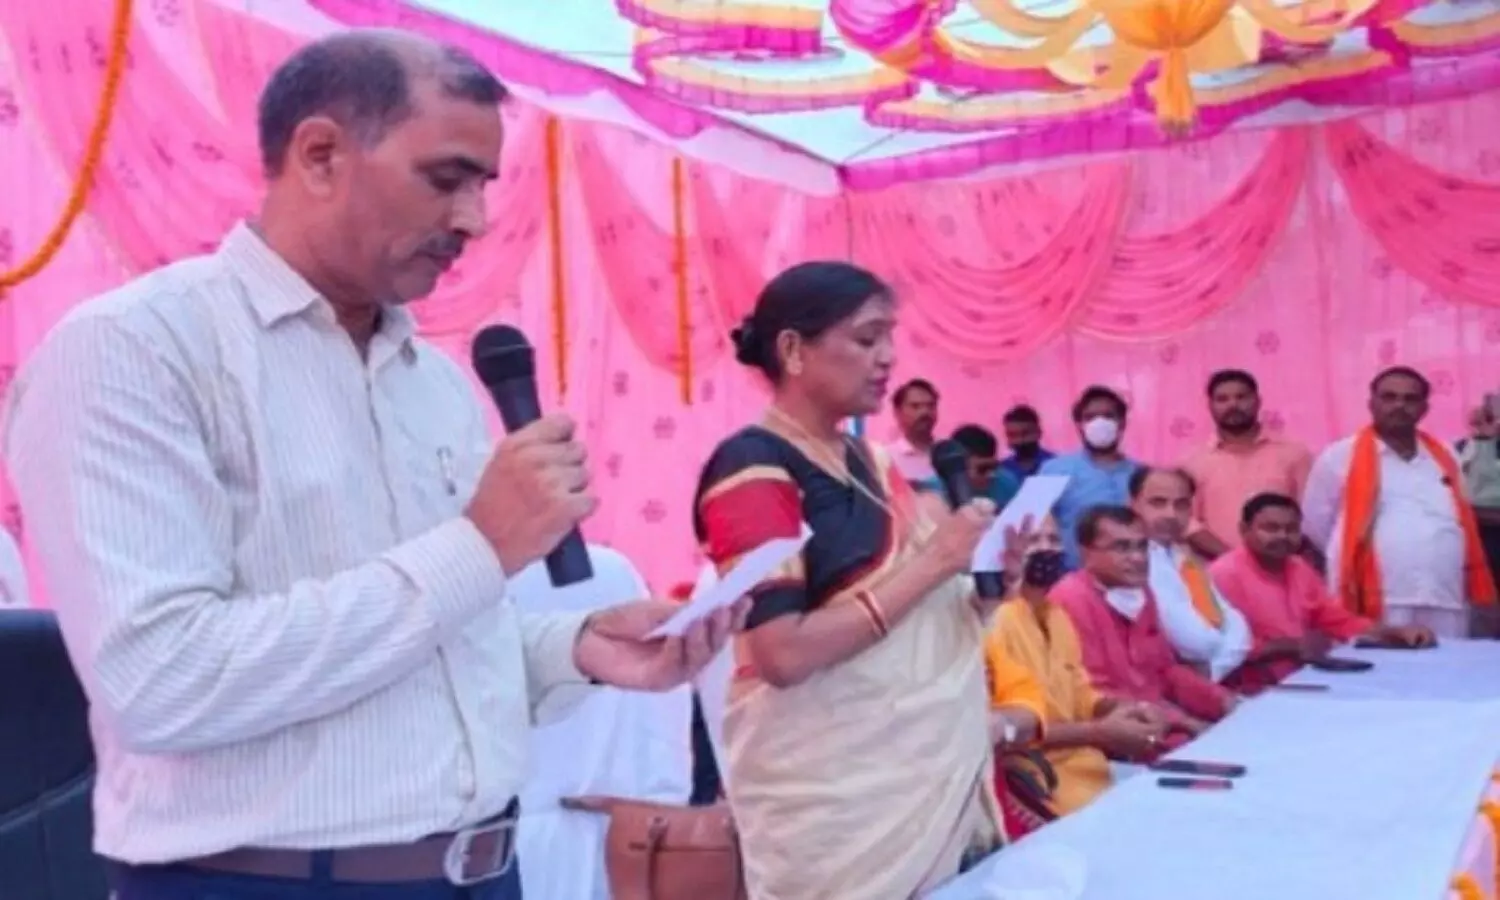 Sonbhadra News: जिले की सियासत में महिलाओं का दखल बढ़ा, ब्लॉक प्रमुख और प्रधान की अधिकतर सीटें महिलाओं के हाथ